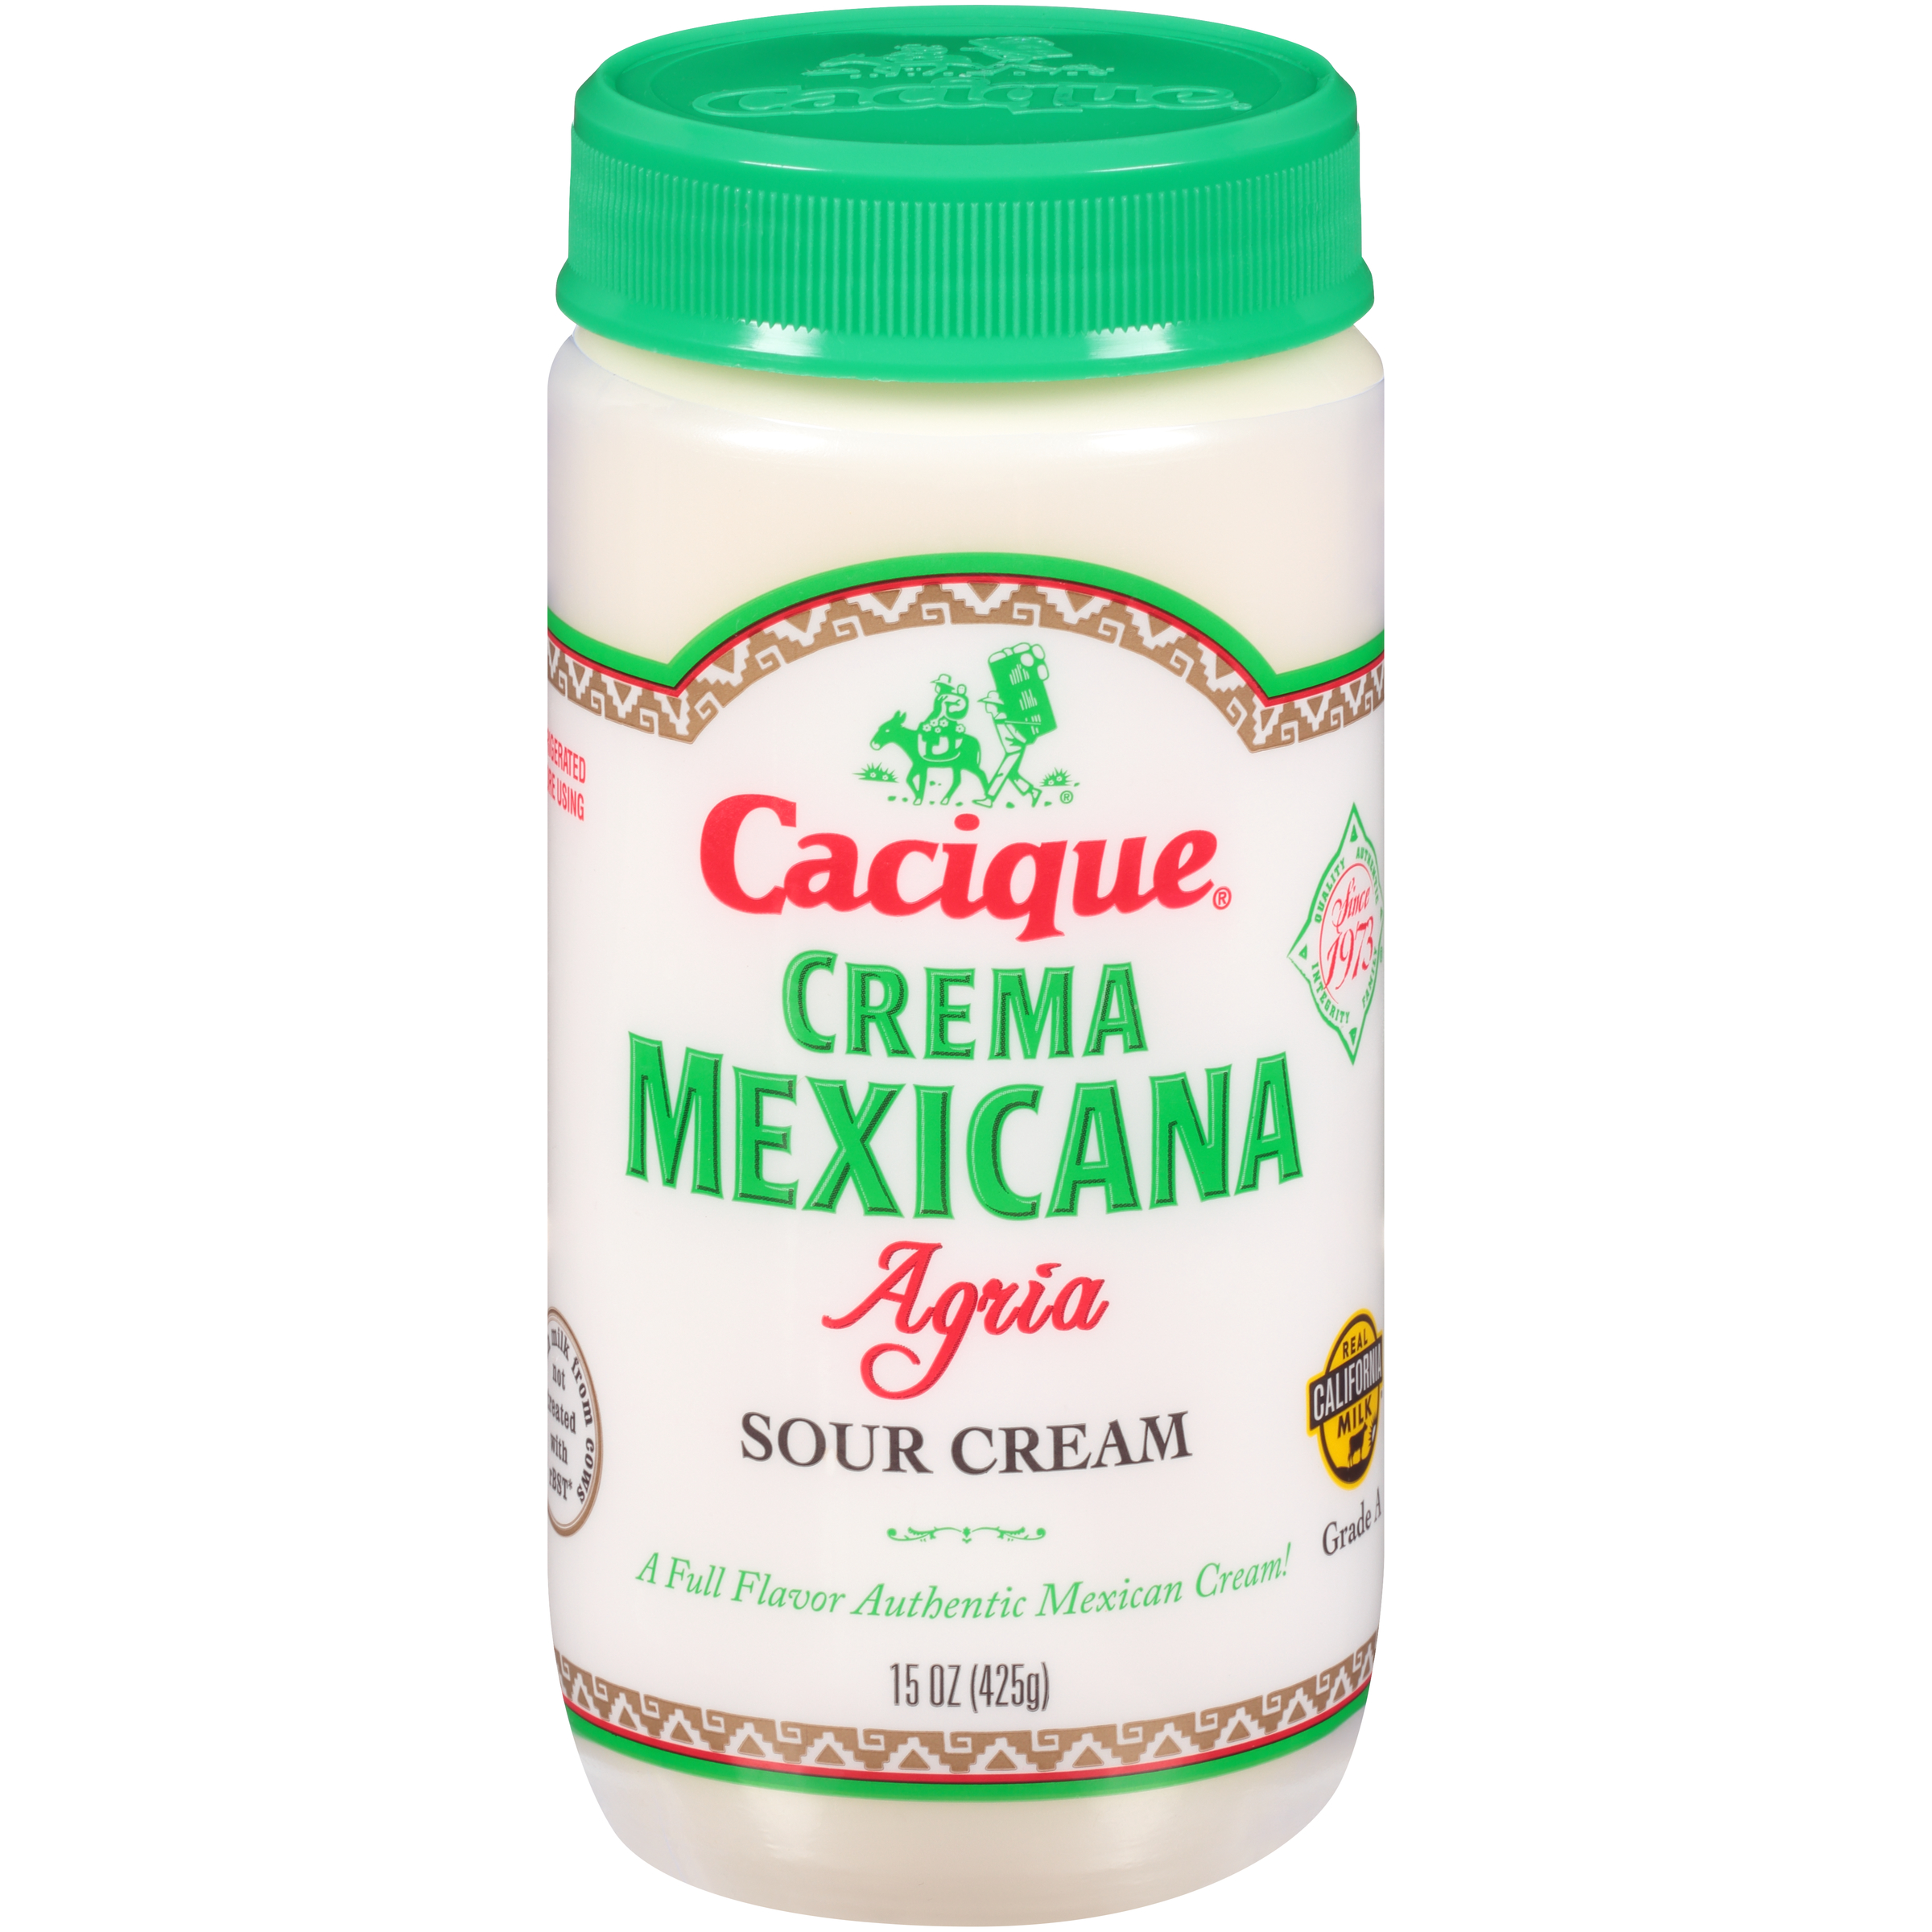 Cacique Crema Mexicana Agria, Sour Cream, 15 oz Jar (Refrigerated) - image 1 of 8